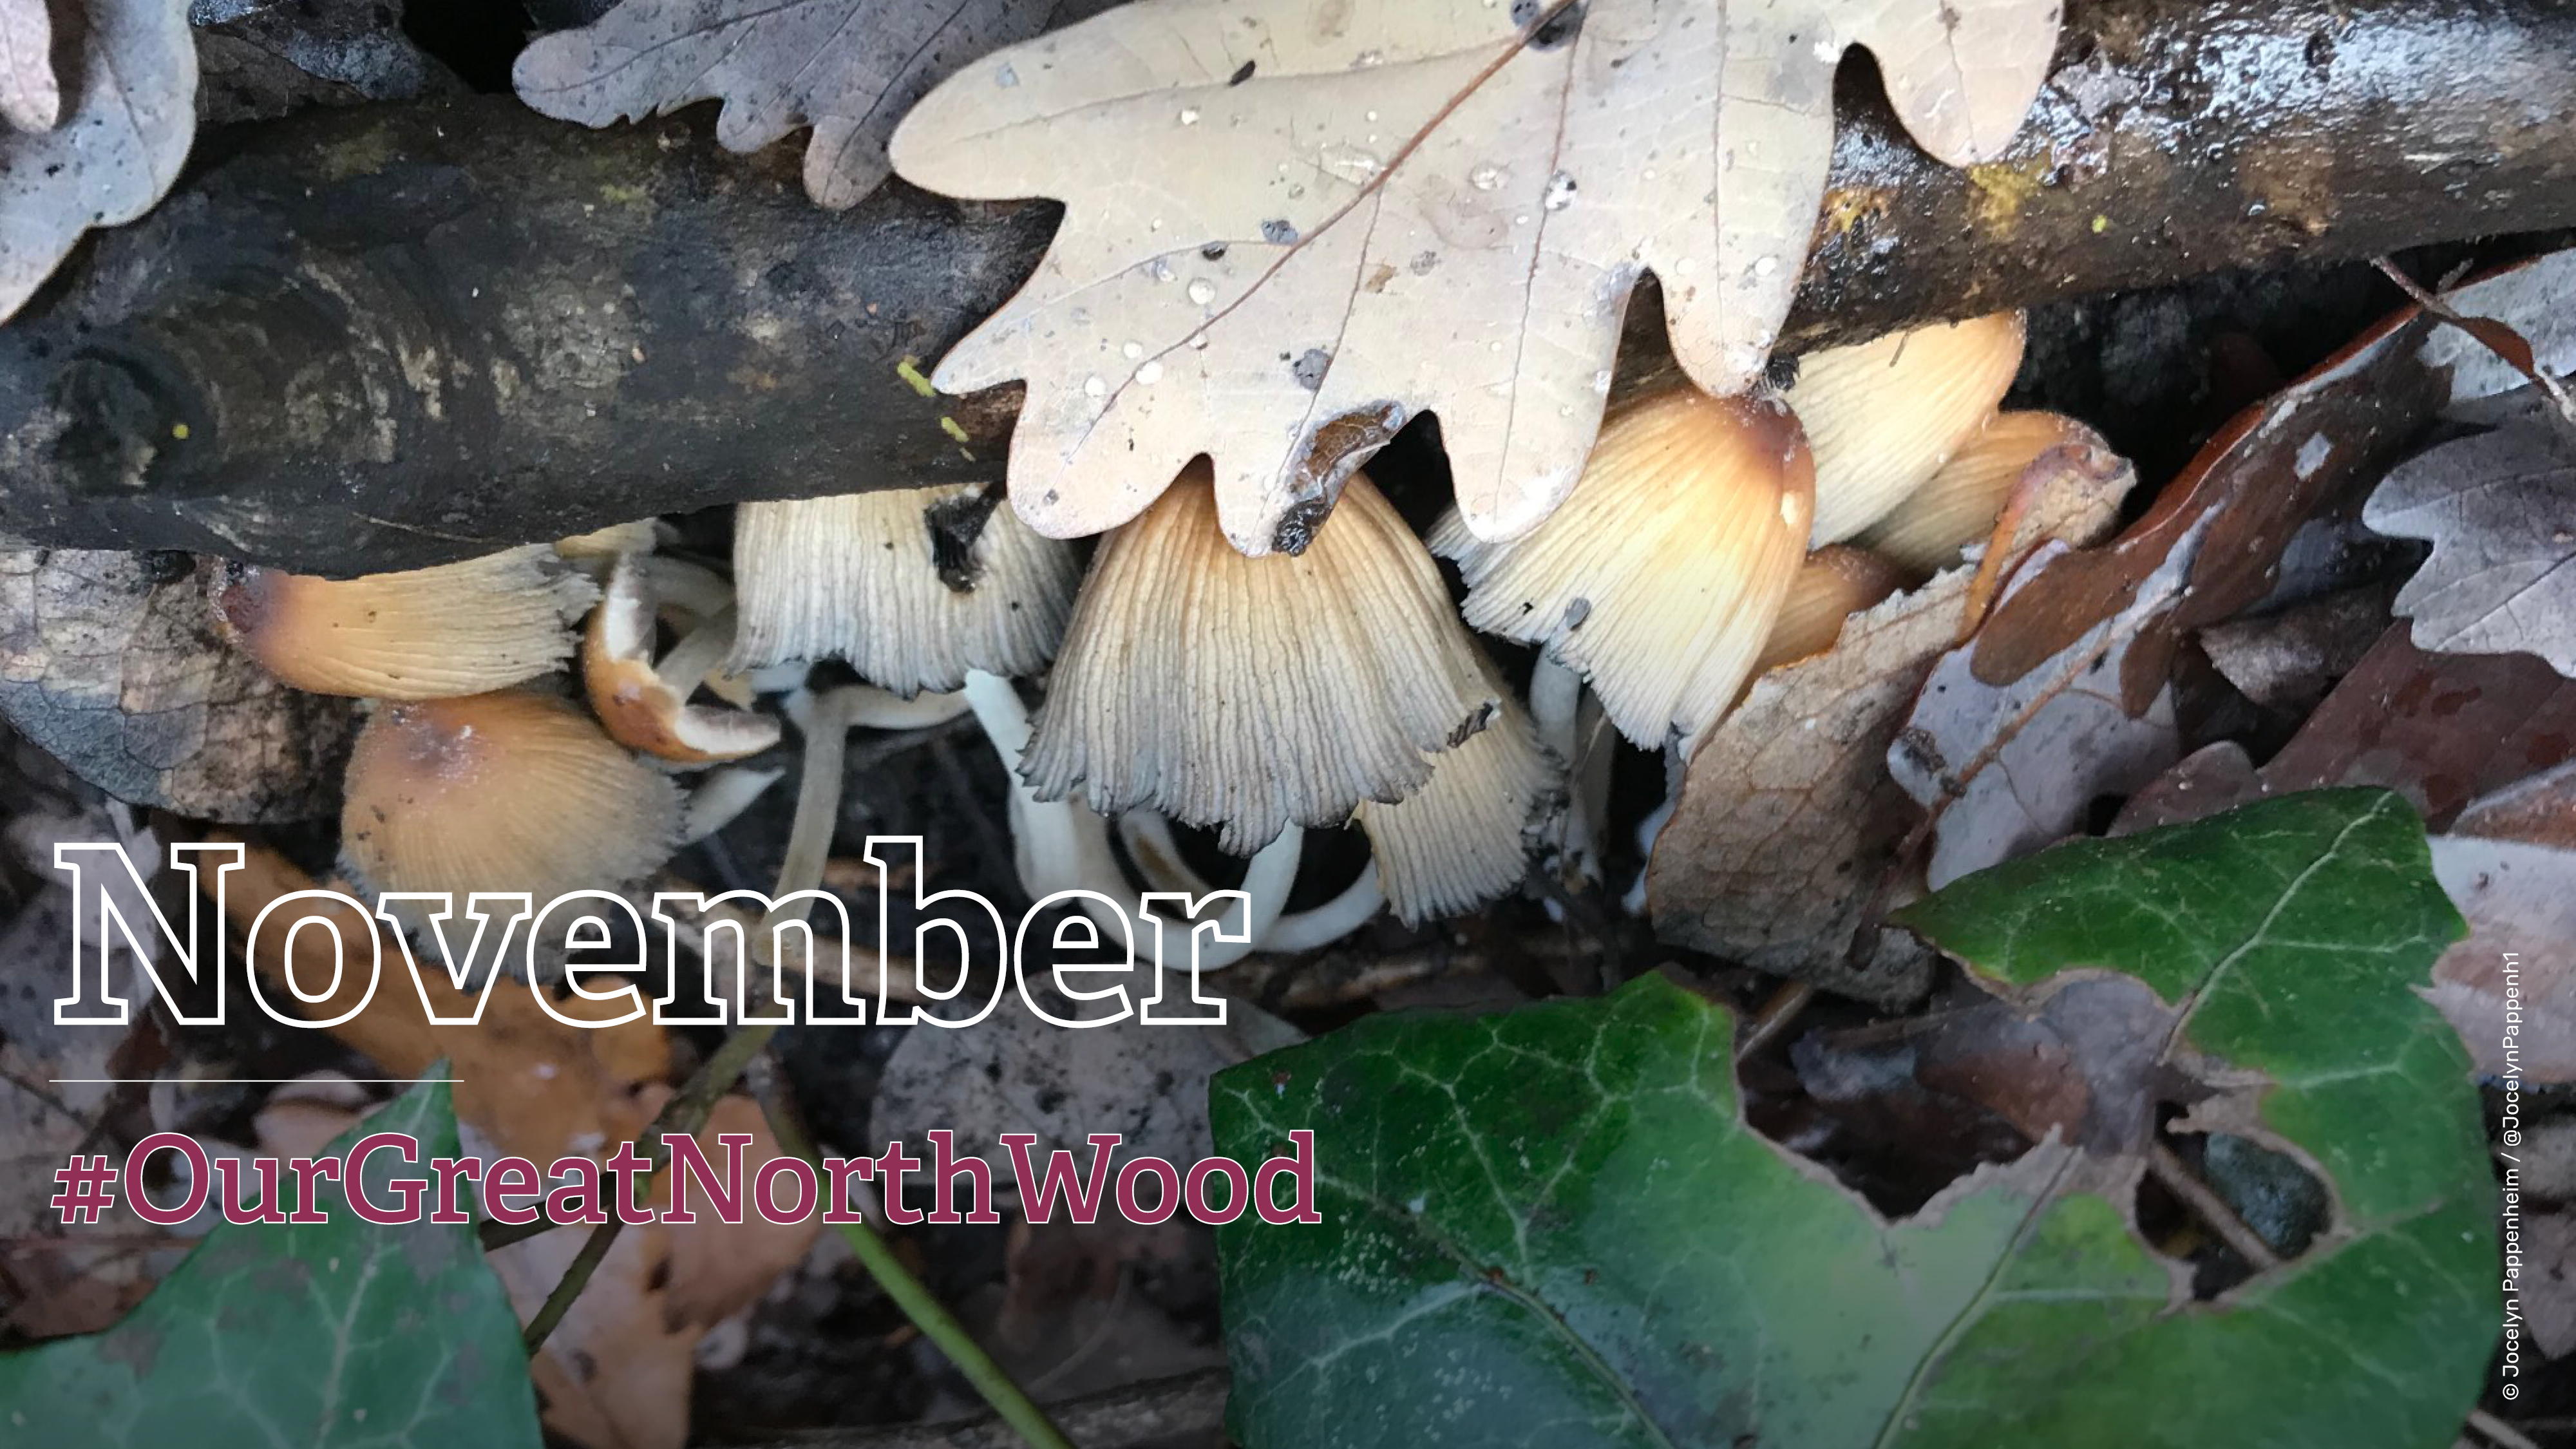 Great North Wood - November